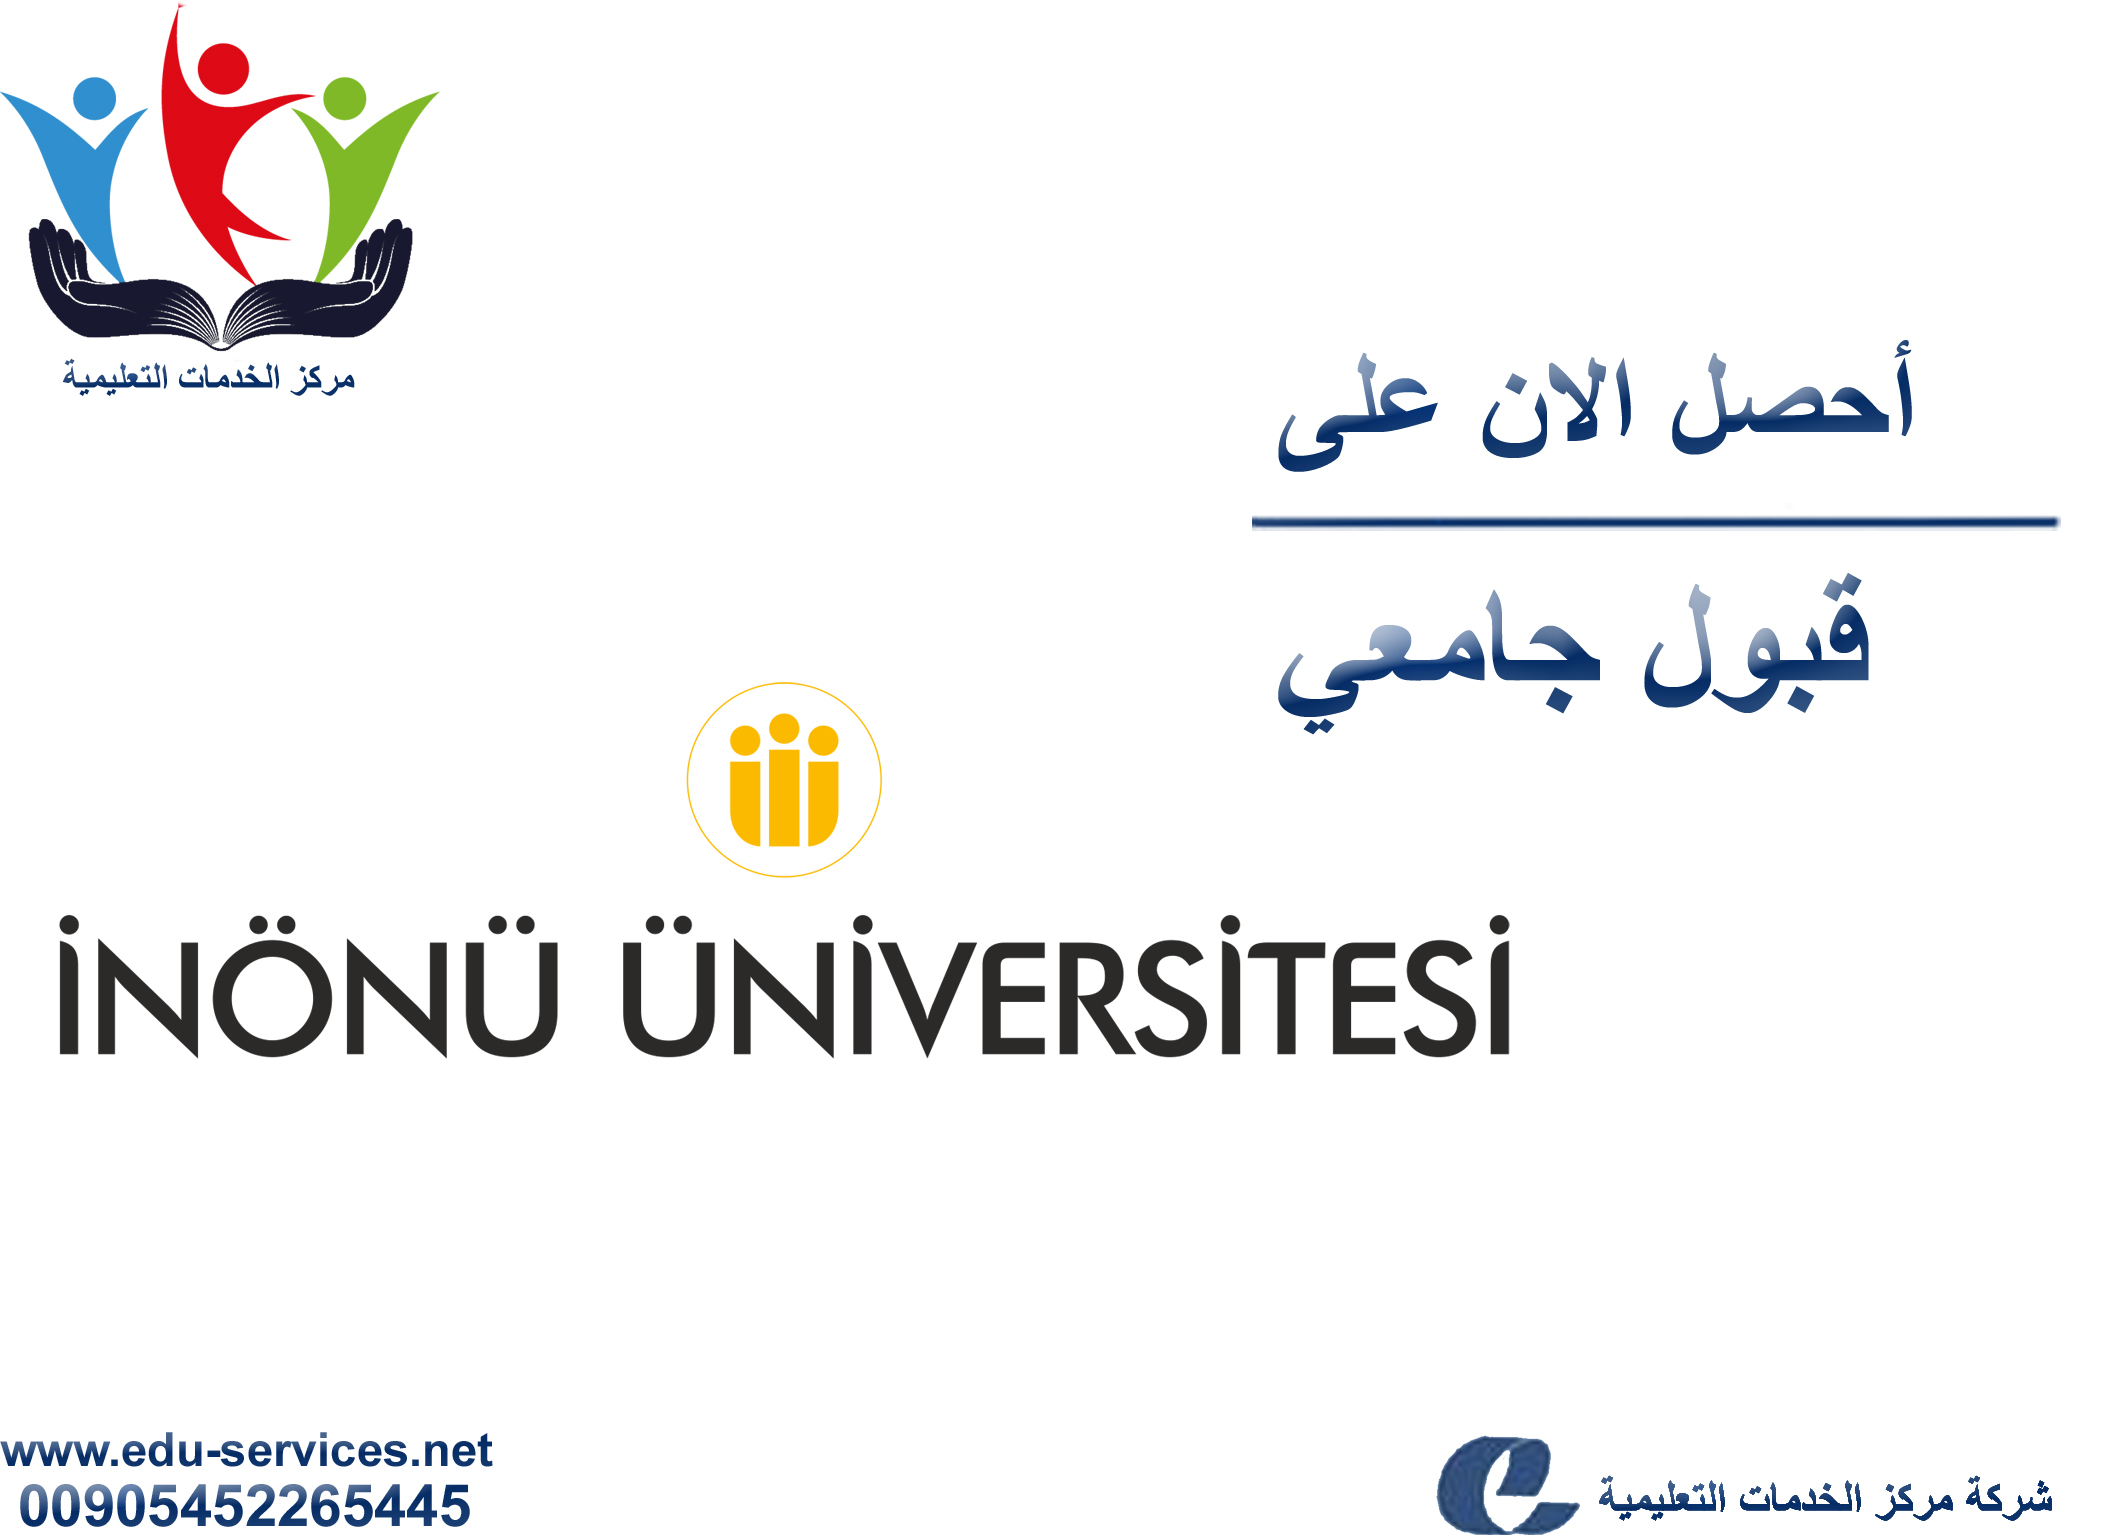 افتتاح التسجيل في جامعة انونو للعام 2018-2019